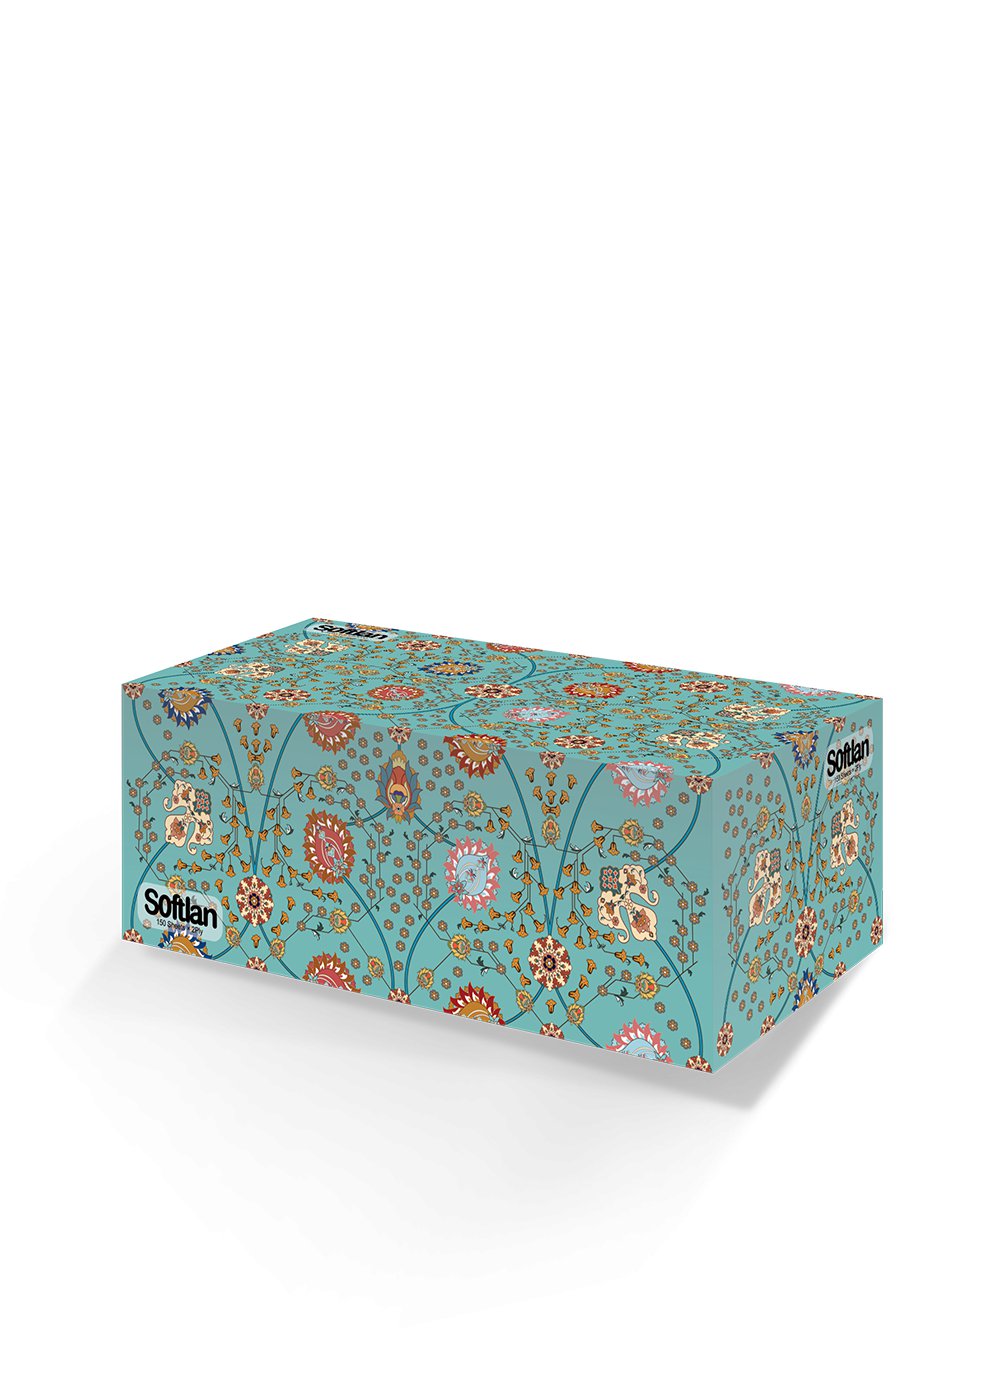 دستمال كاغذي جعبه ای سافتلن سري فرش نقش گل شاه عباسی 150 برگ دولایه